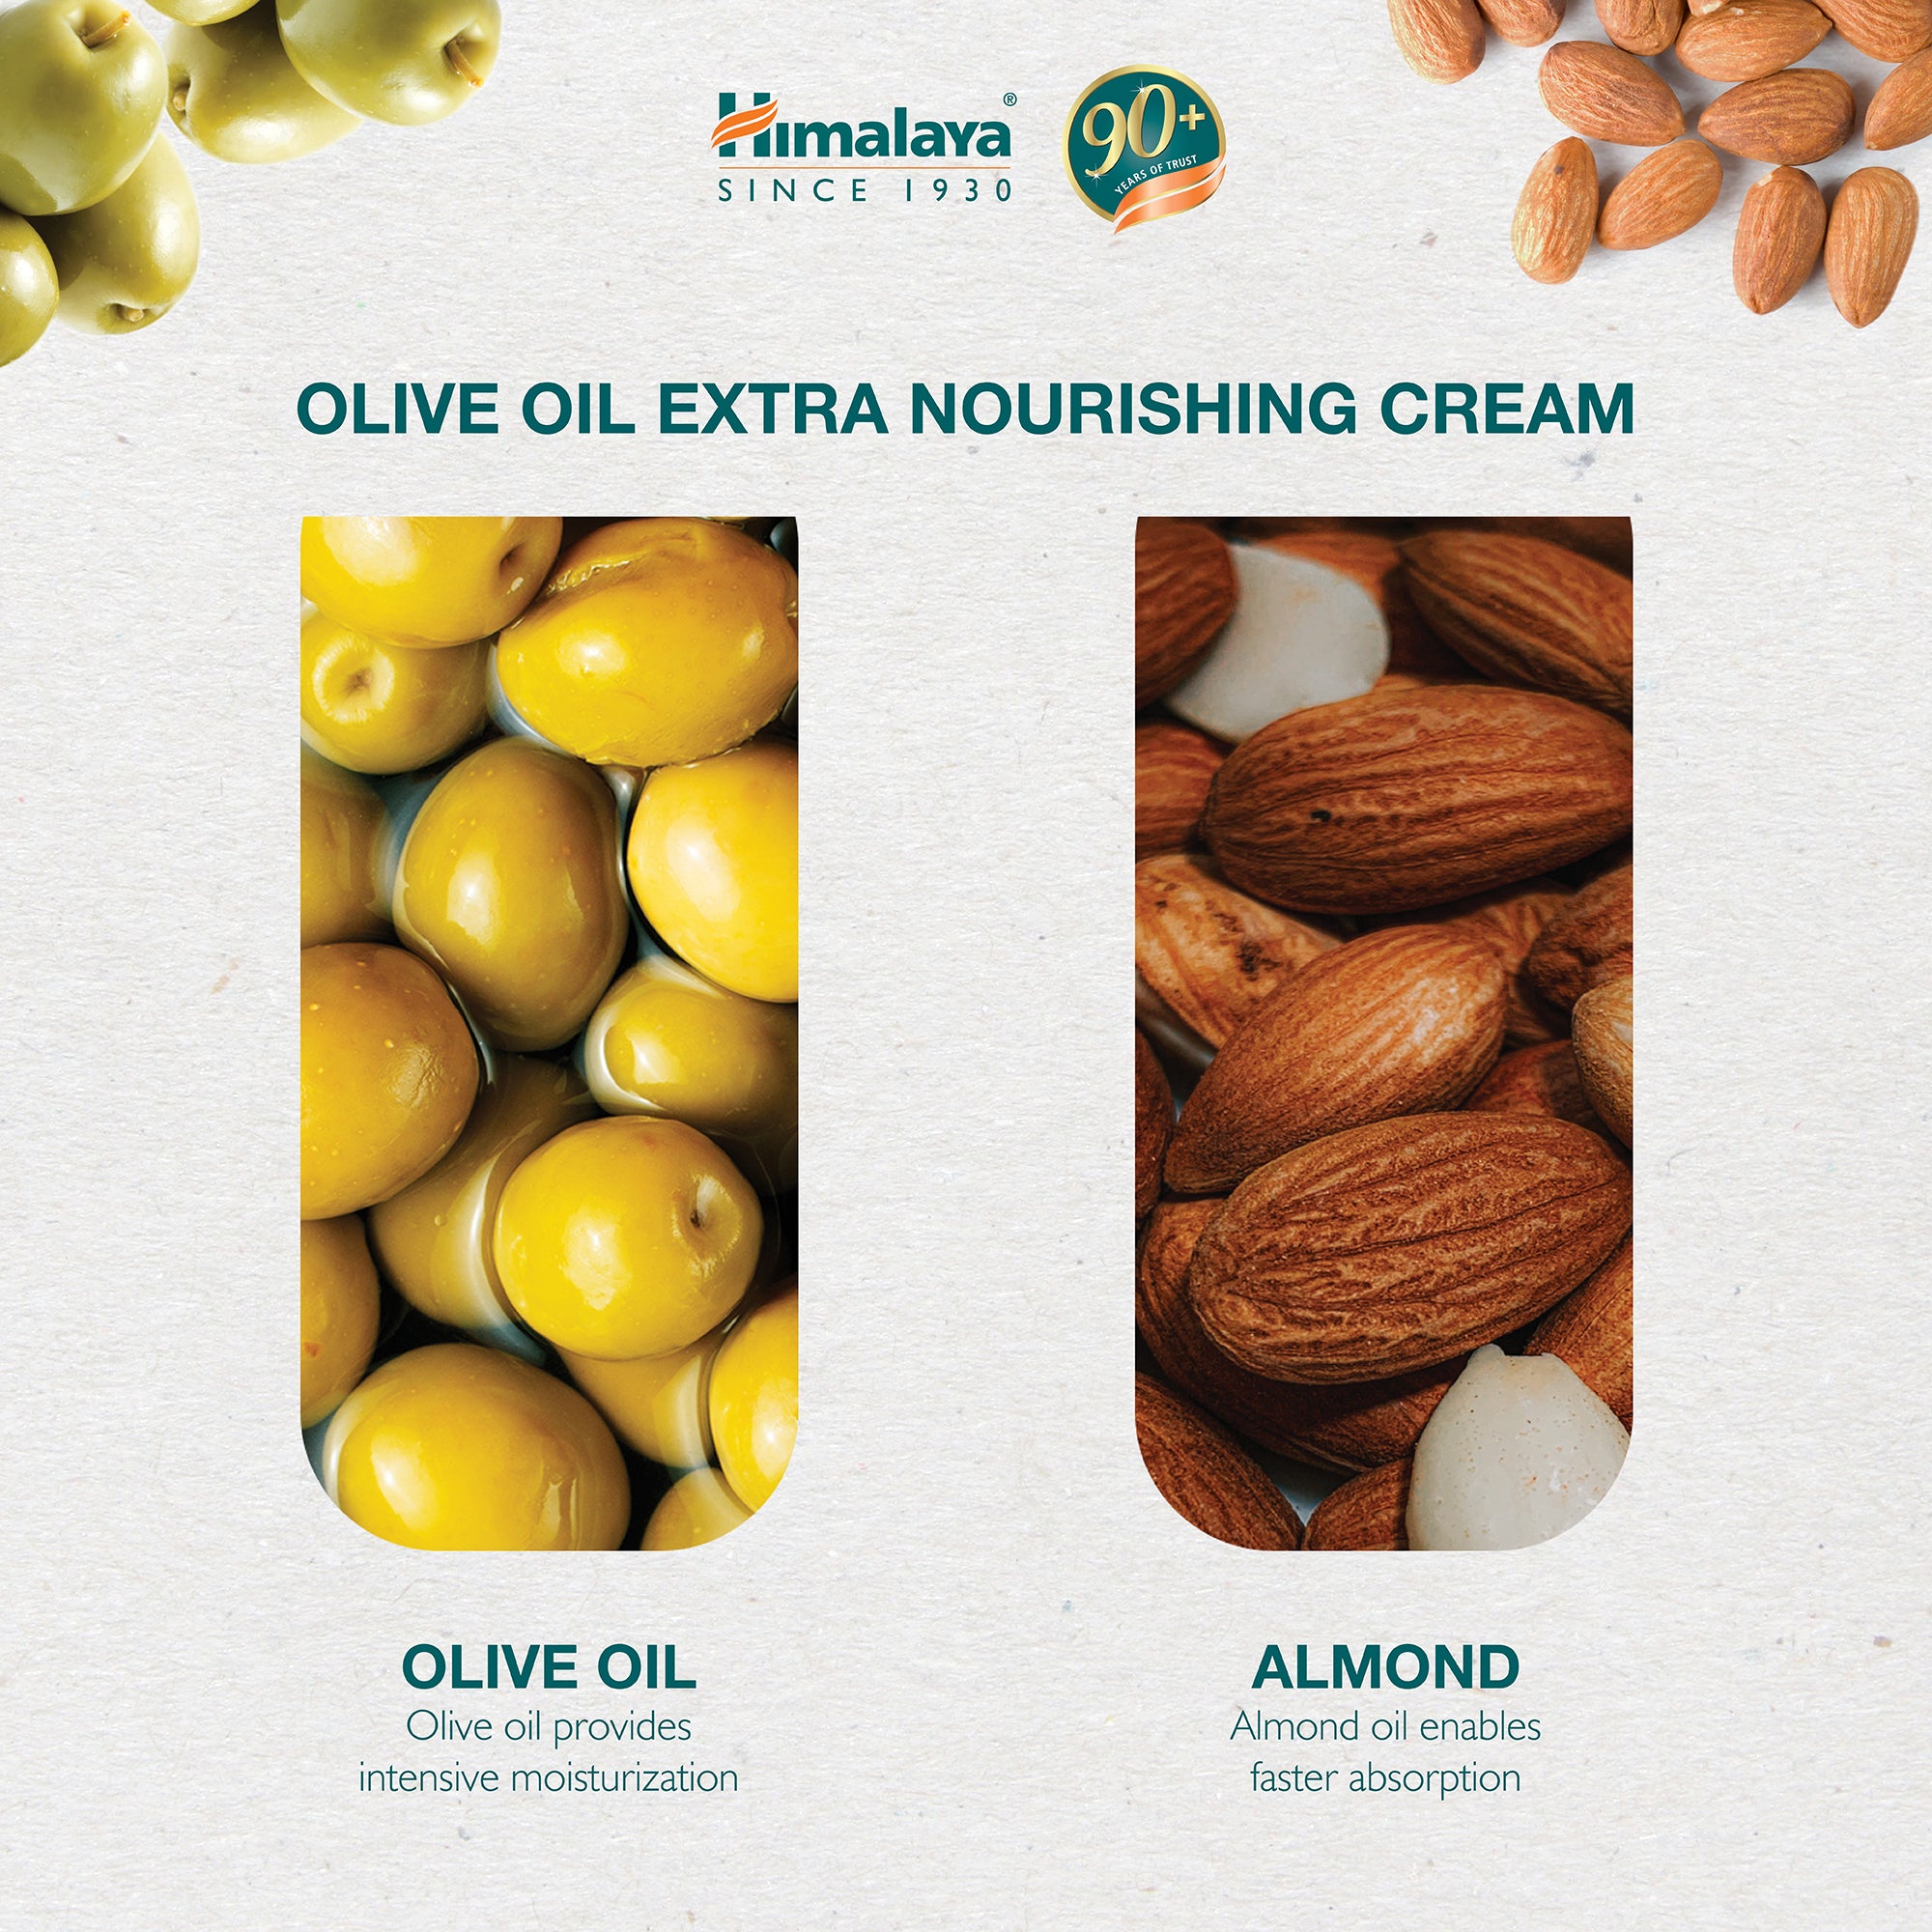 Himalaya Olive Extra Nourishing Cream - 50ml (Pack of 2)